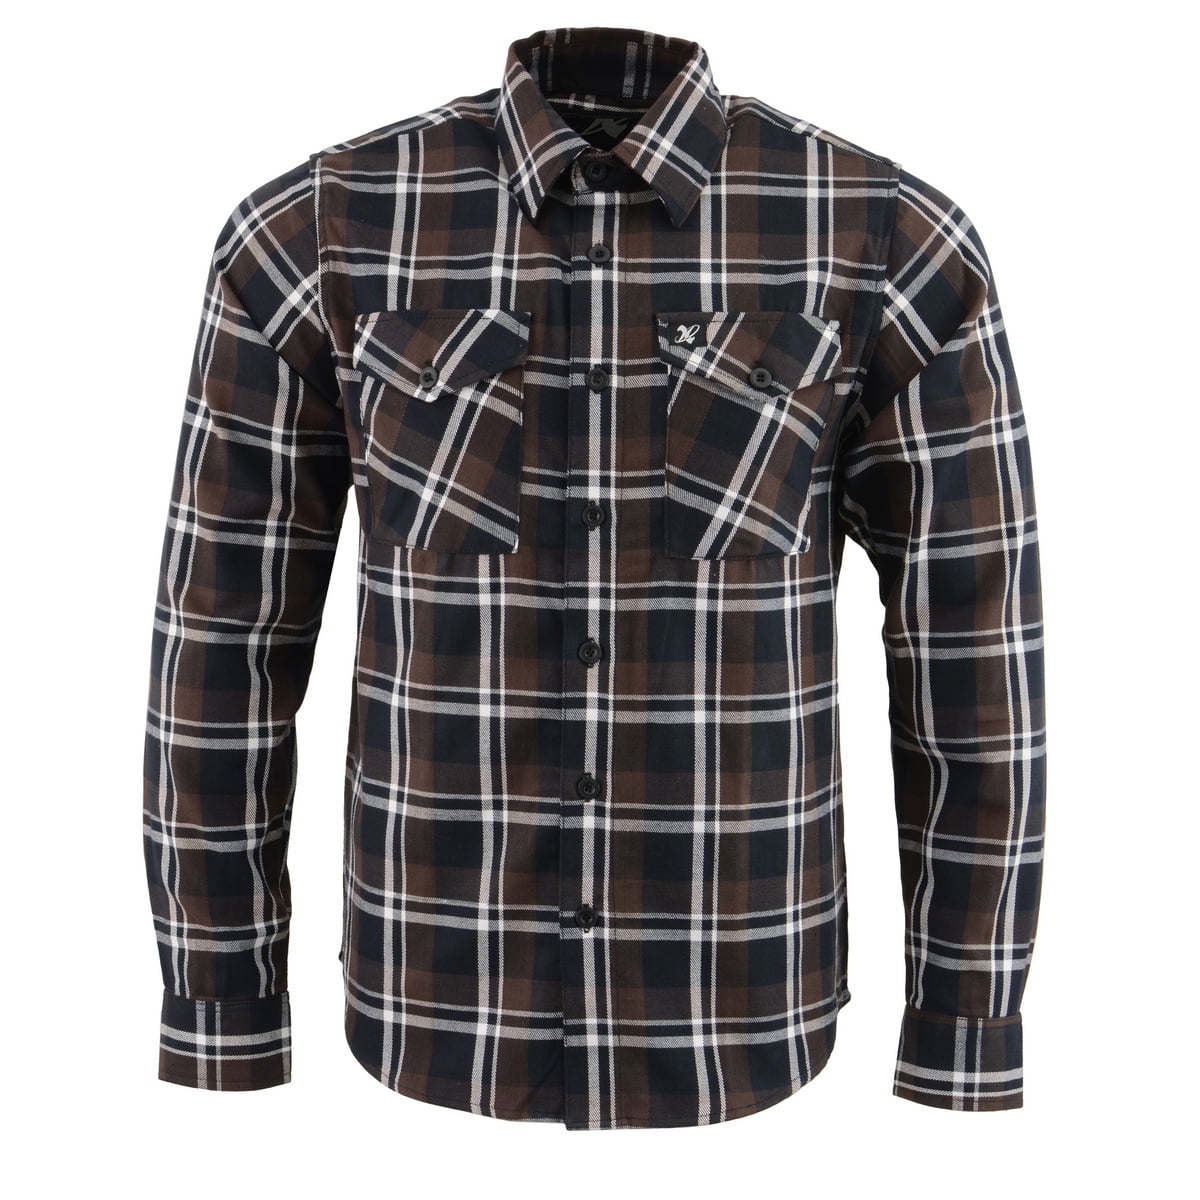 NEXGEN - NexGen MNG11643 Men's Brown, Black and White Long Sleeve Cotton Flannel Shirt Brown ...